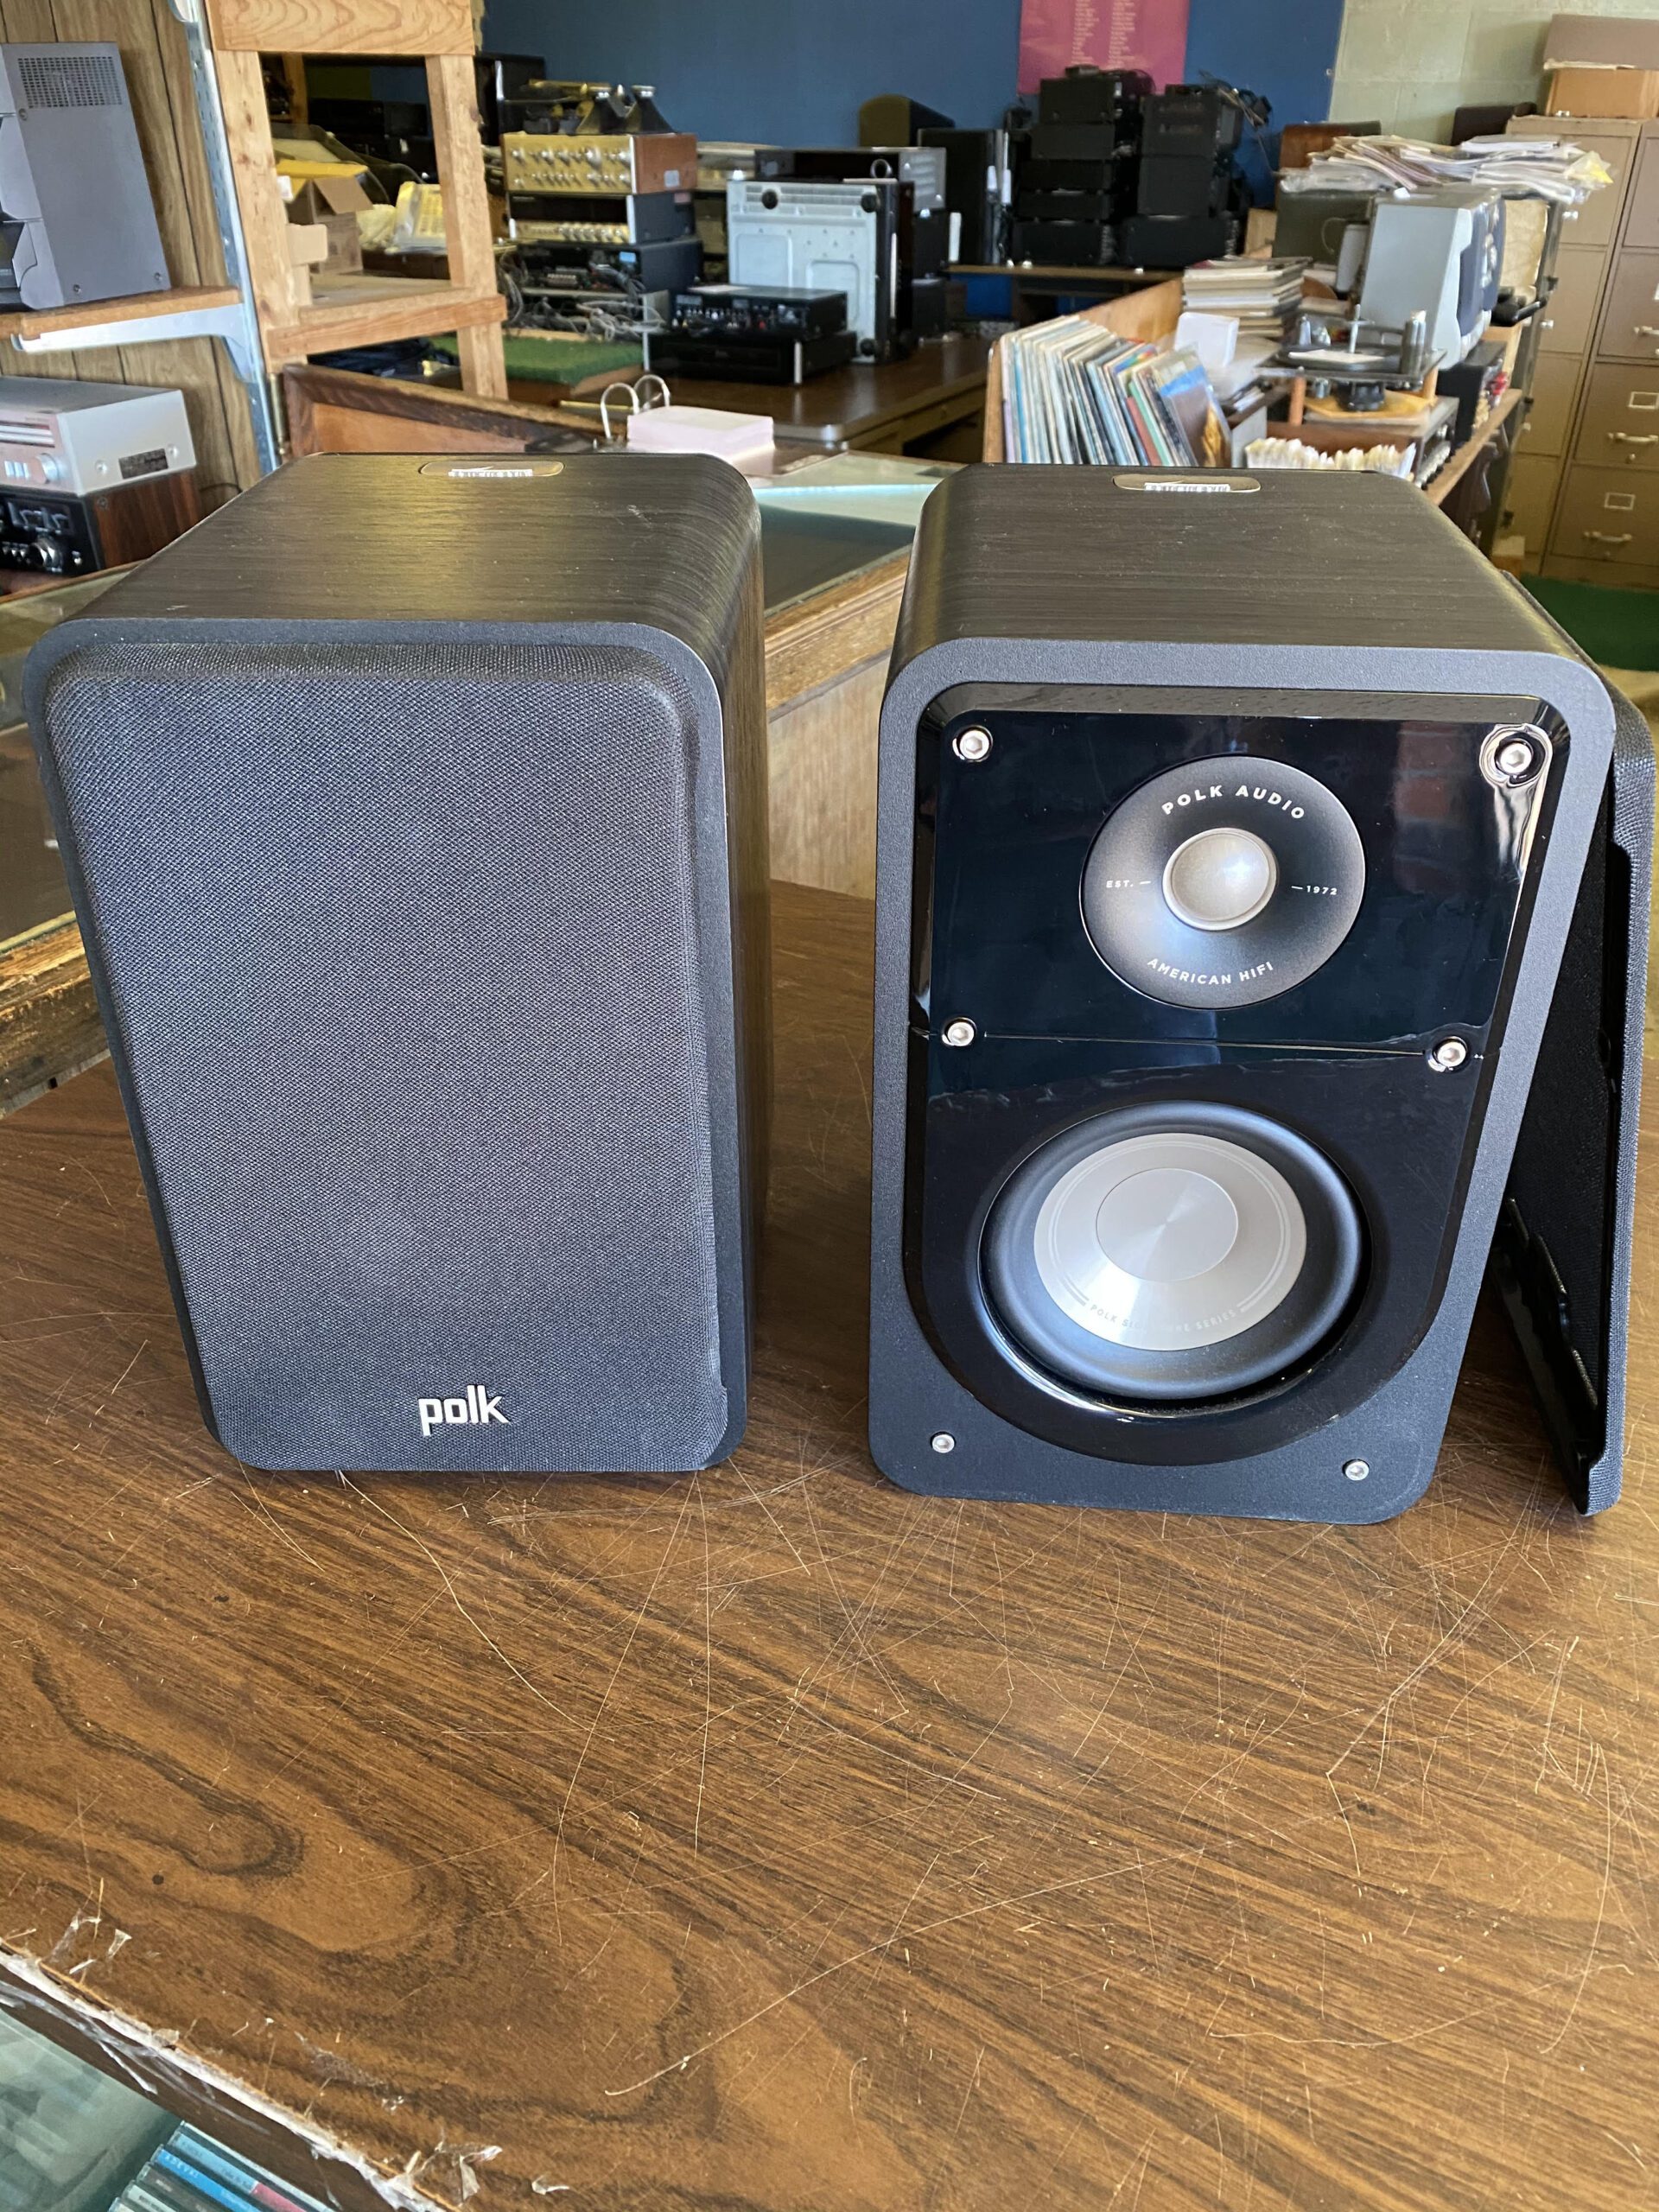 Don Jones Custom Stereo - polk speakers 2 stereo sales and repair